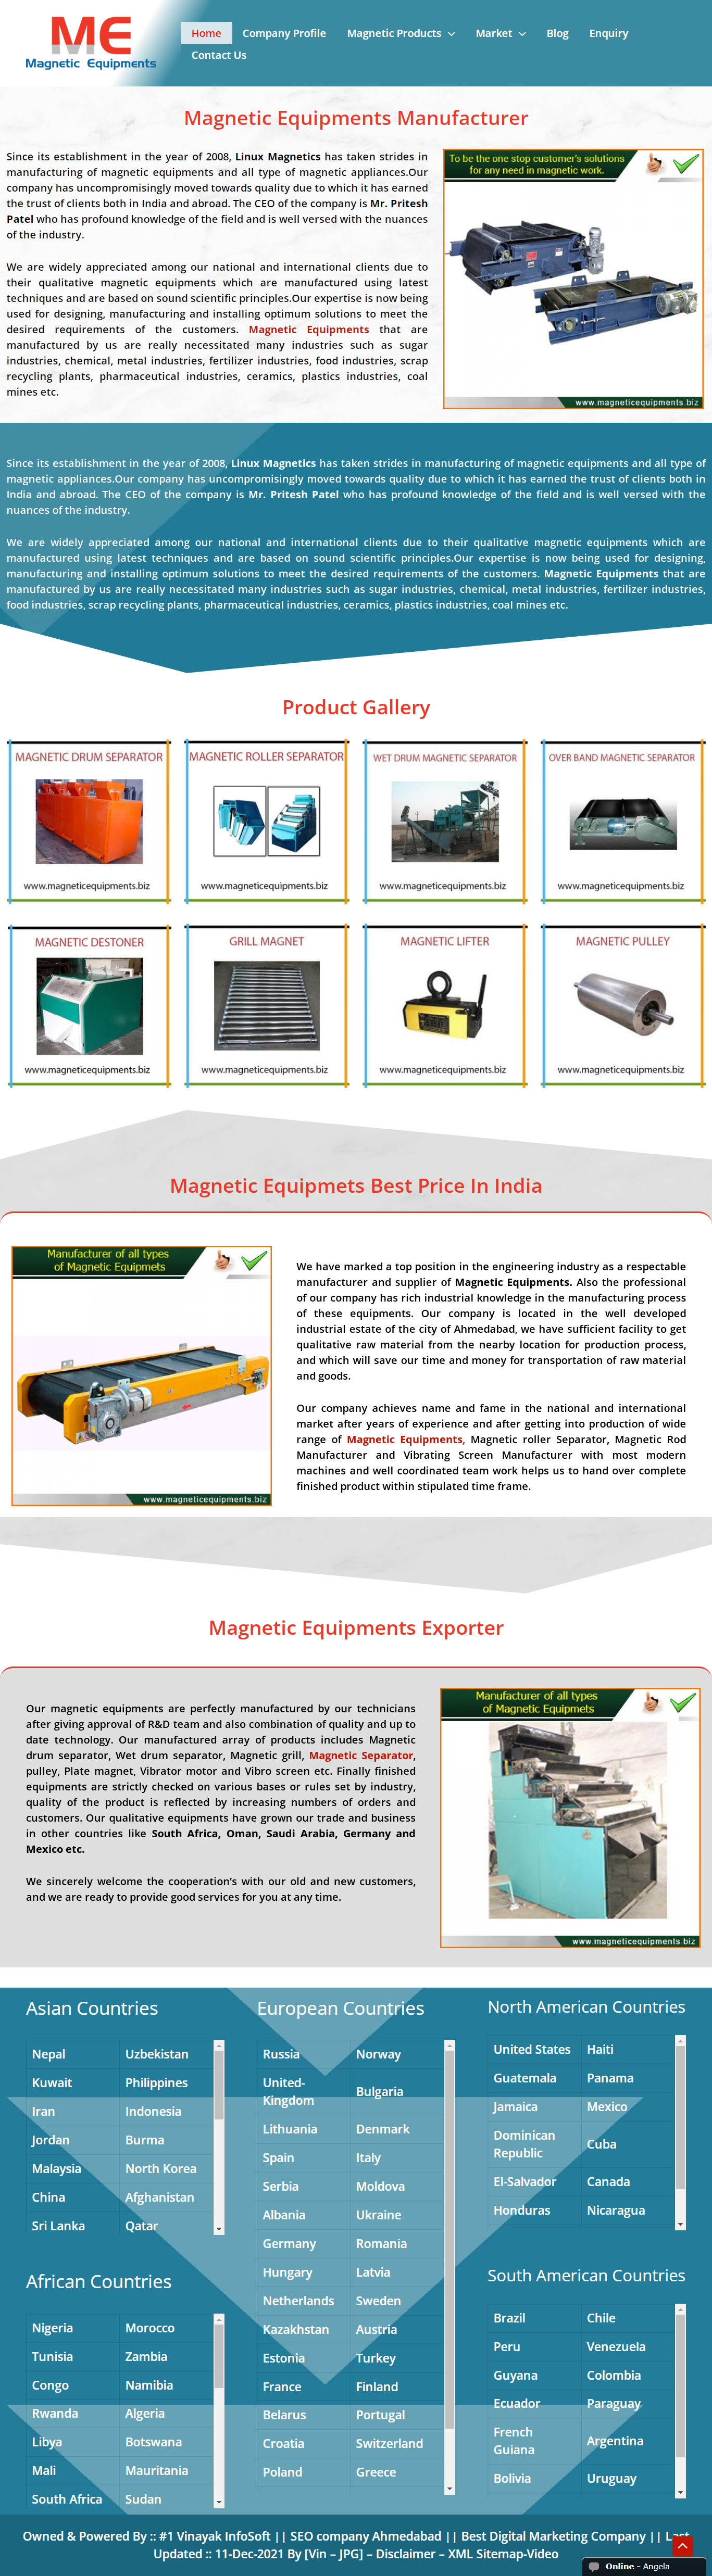 Magnetic Equipments